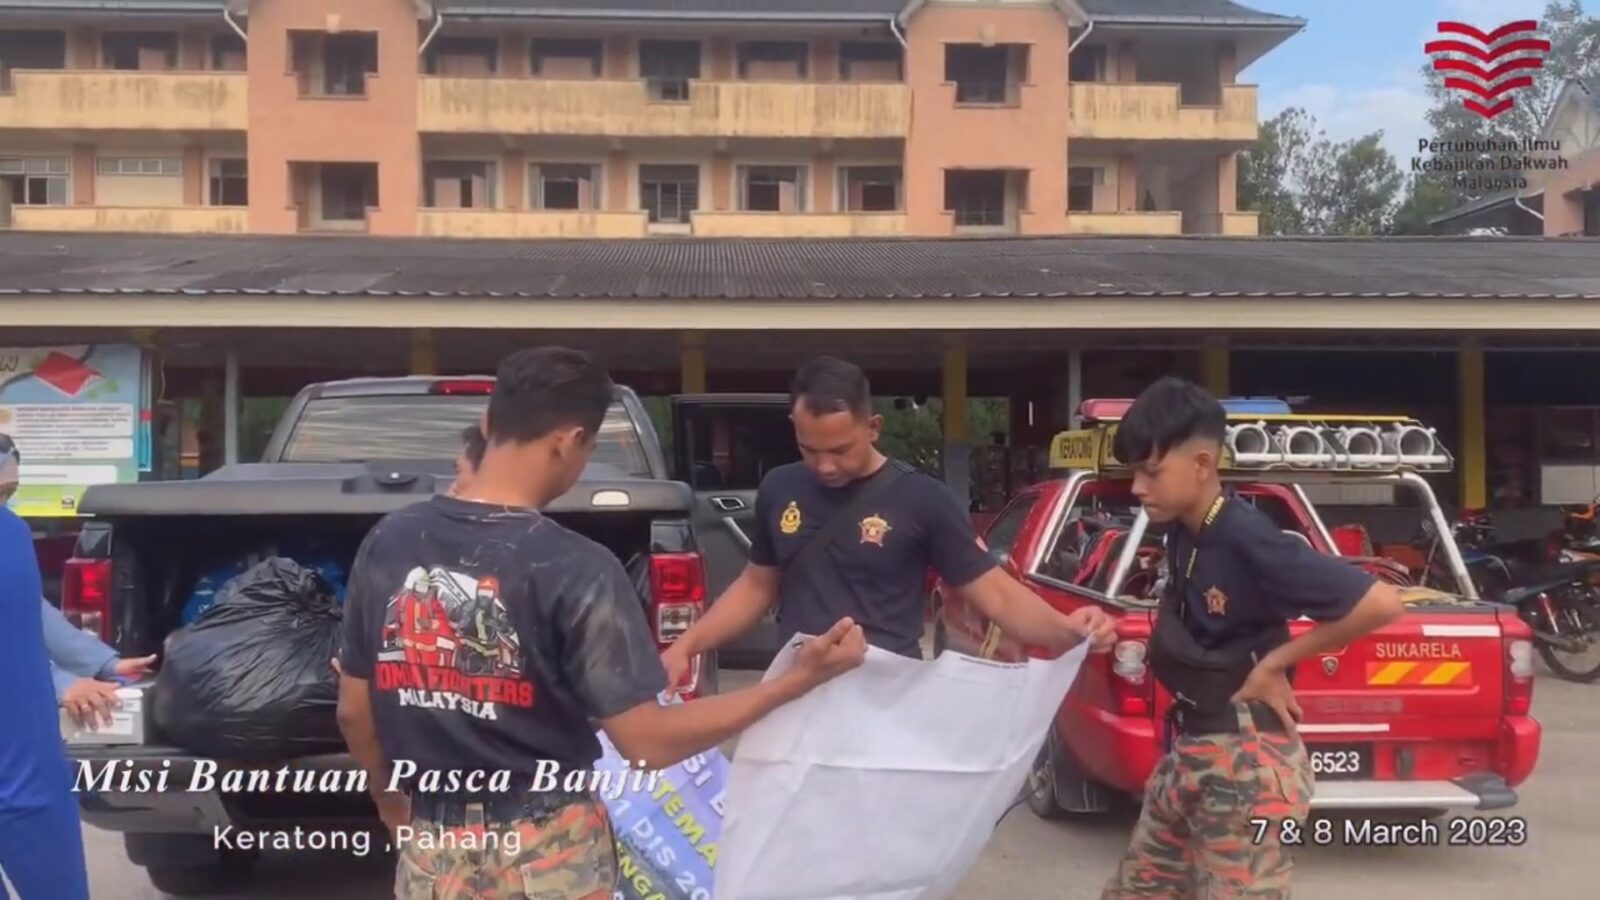 Misi Bantuan Pasca Banjir – Keratong, Pahang [7-8 March 2023]